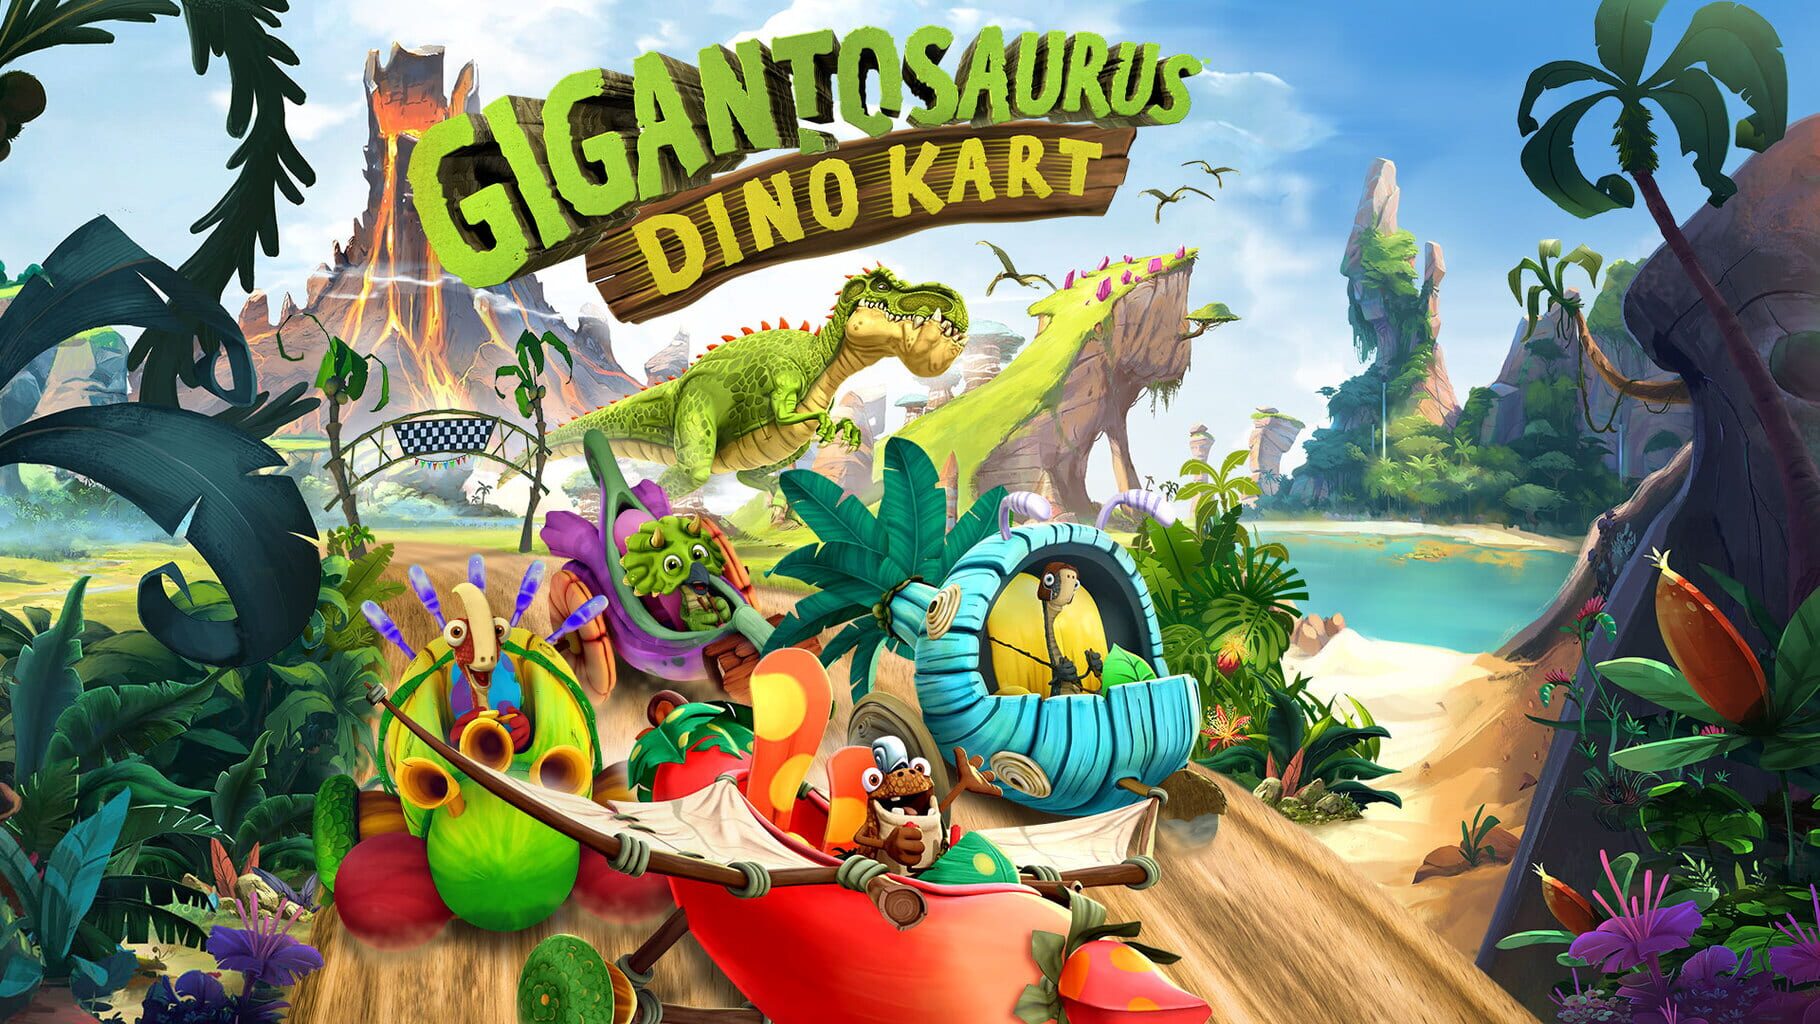 Gigantosaurus Dino Kart artwork